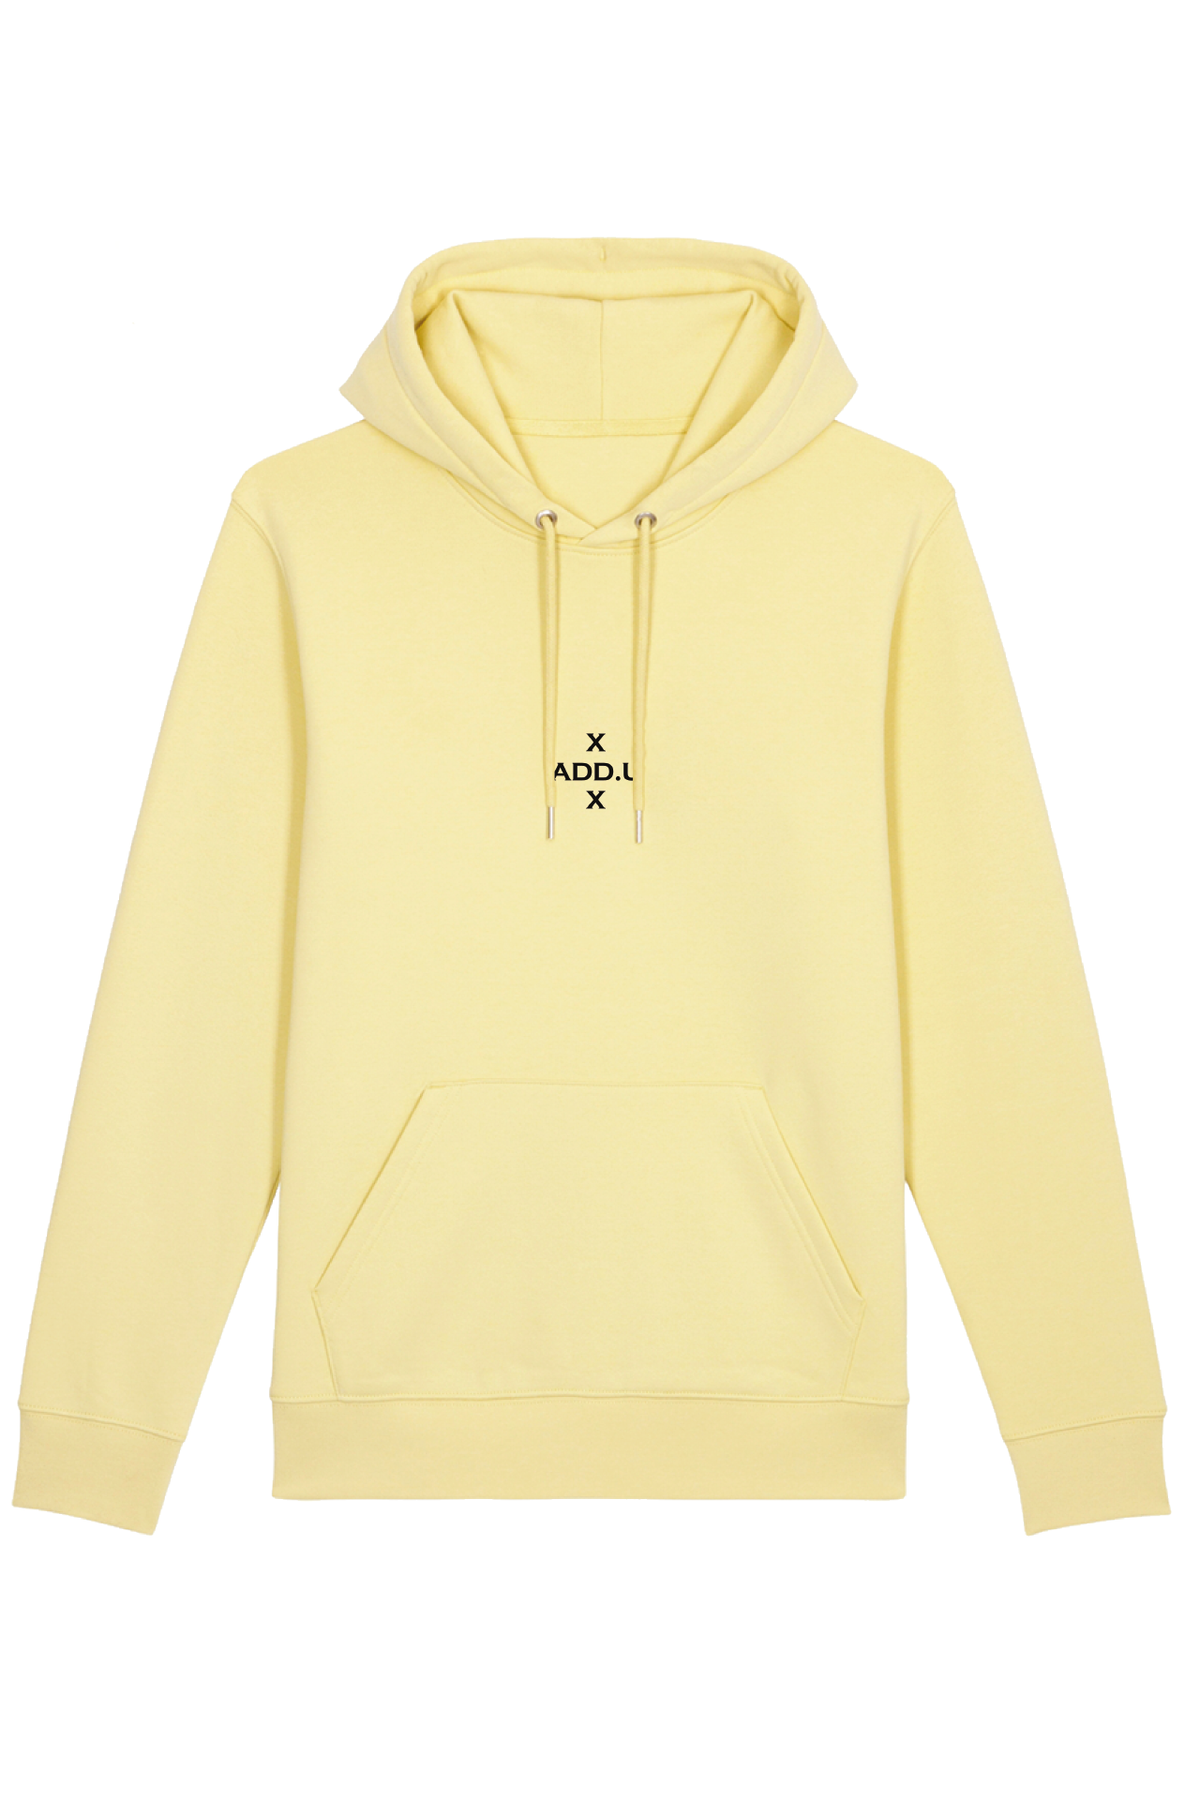 Zachte Gele hoodie BY ADD.U unisex